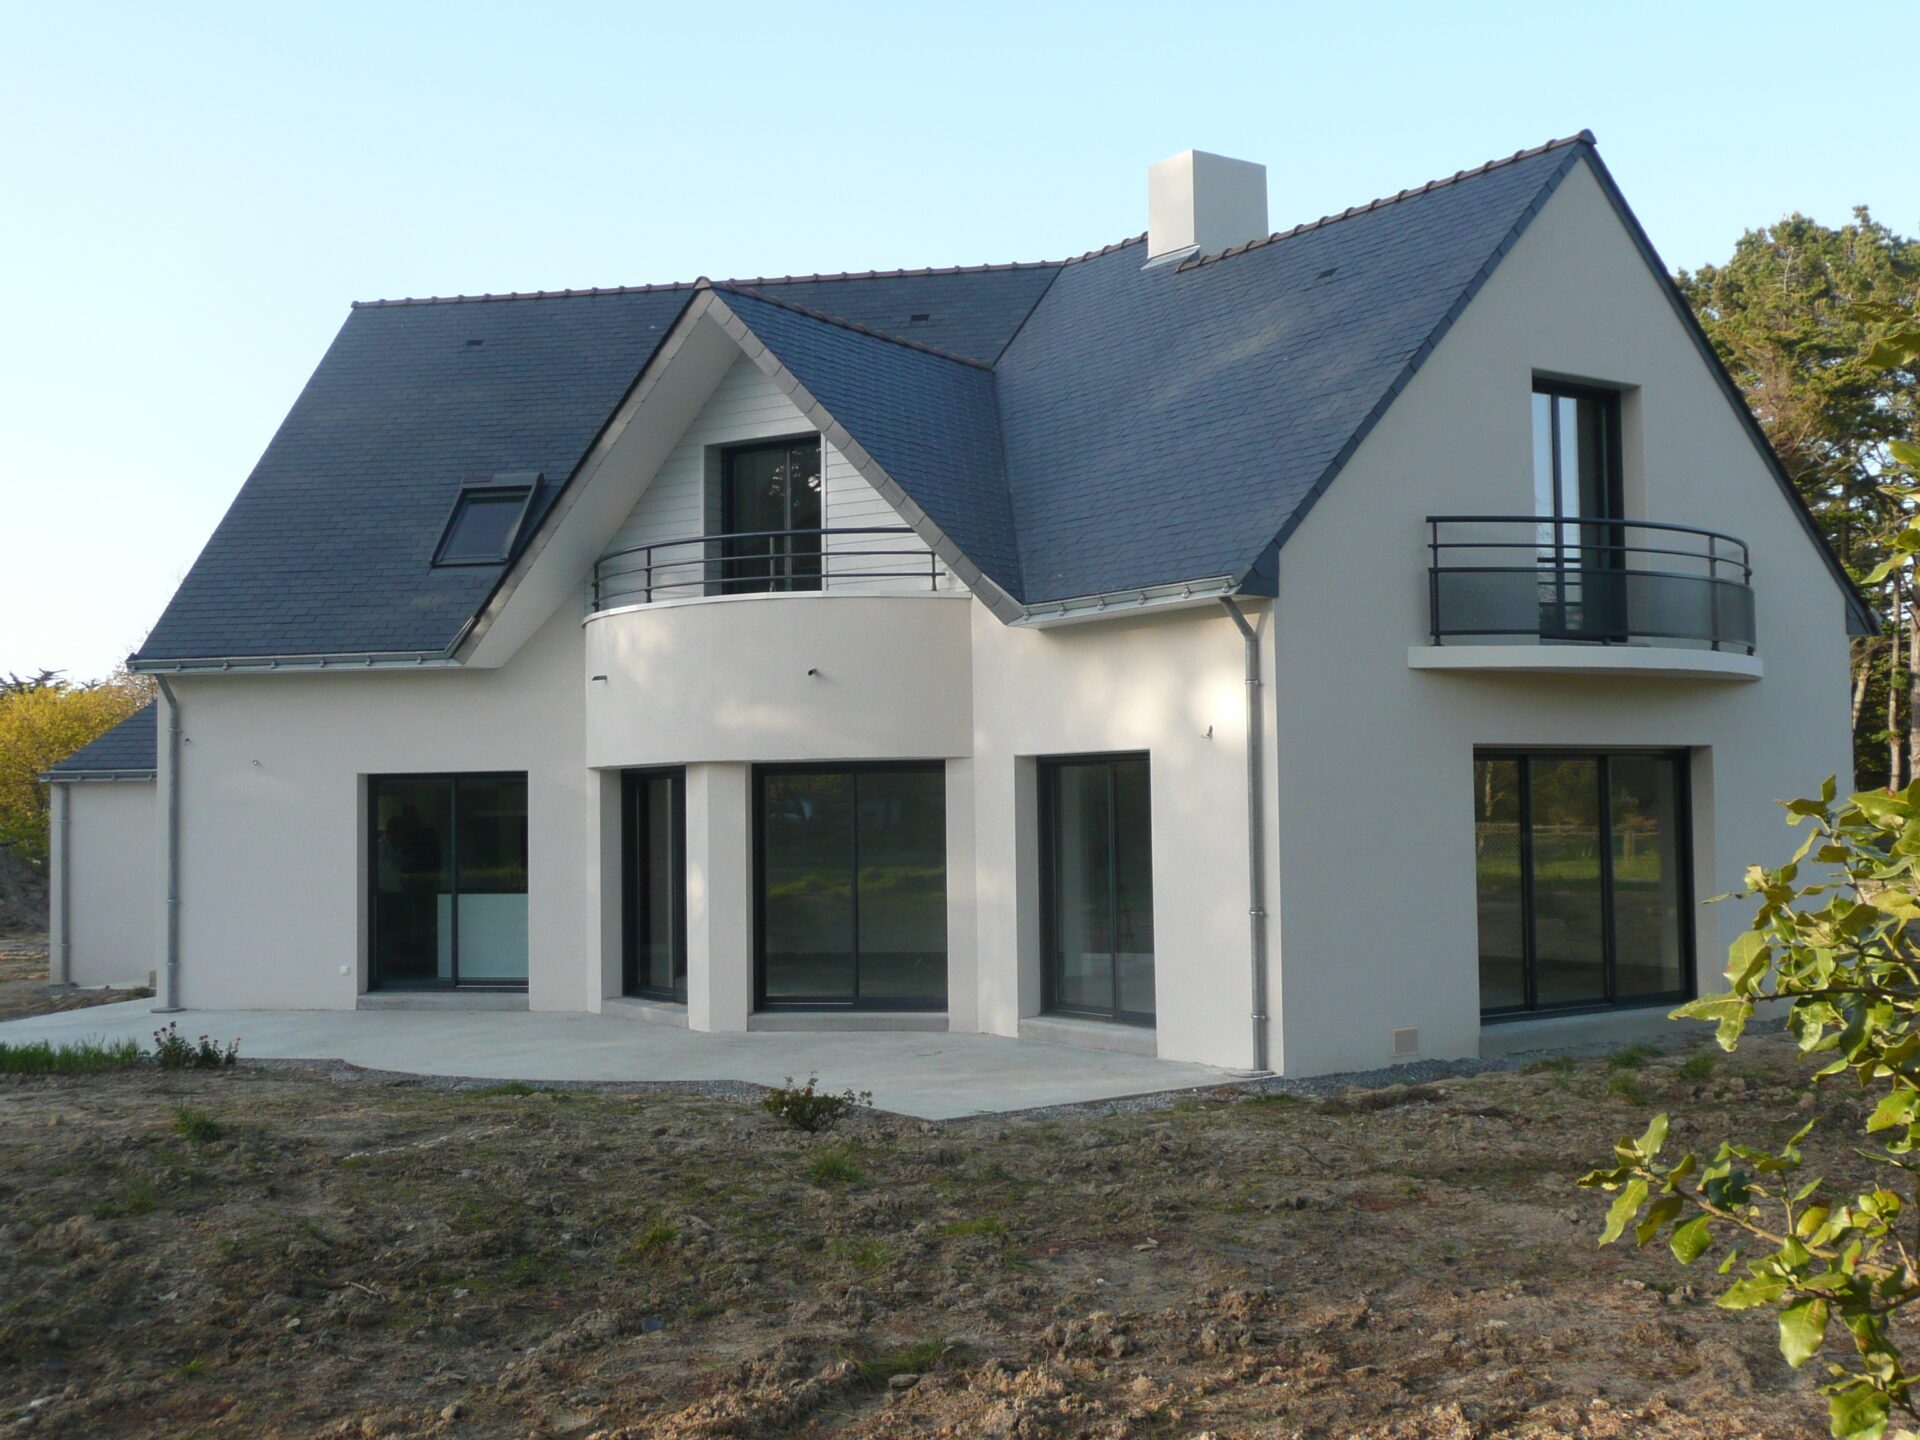 Maison avec toiture en ardoise et grandes baies vitrées